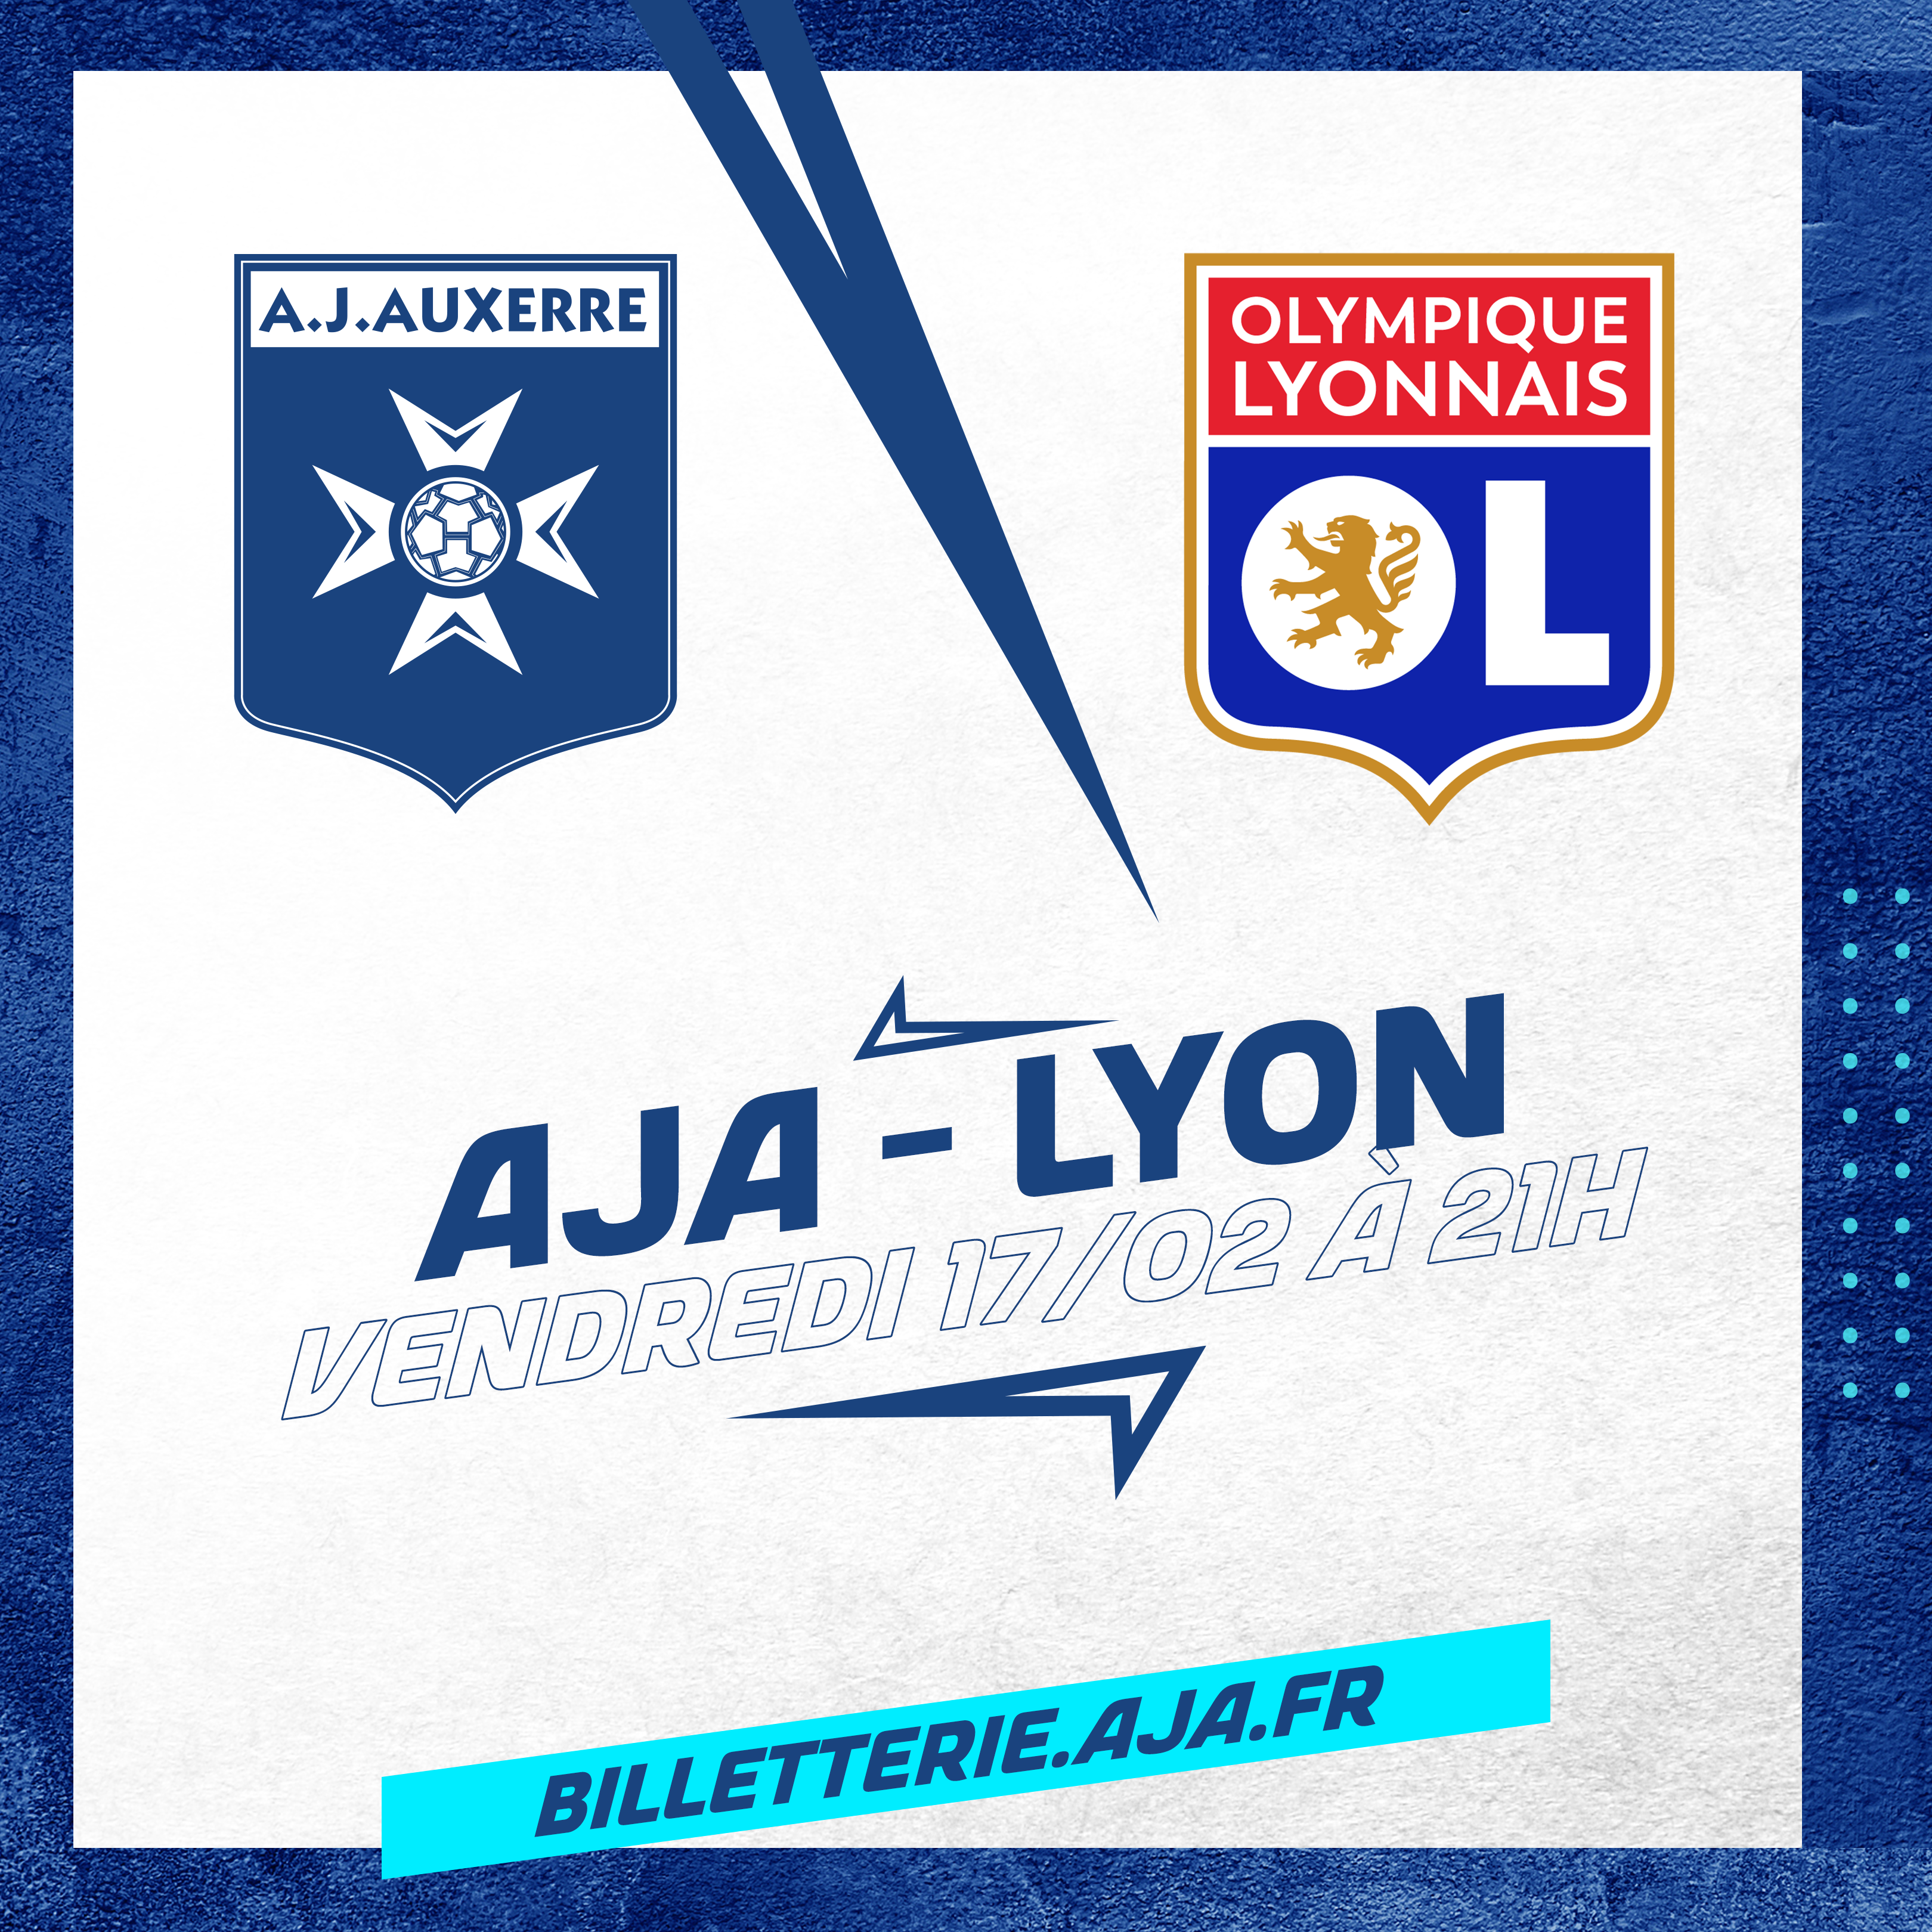 La billetterie pour AJA - Lyon est ouverte